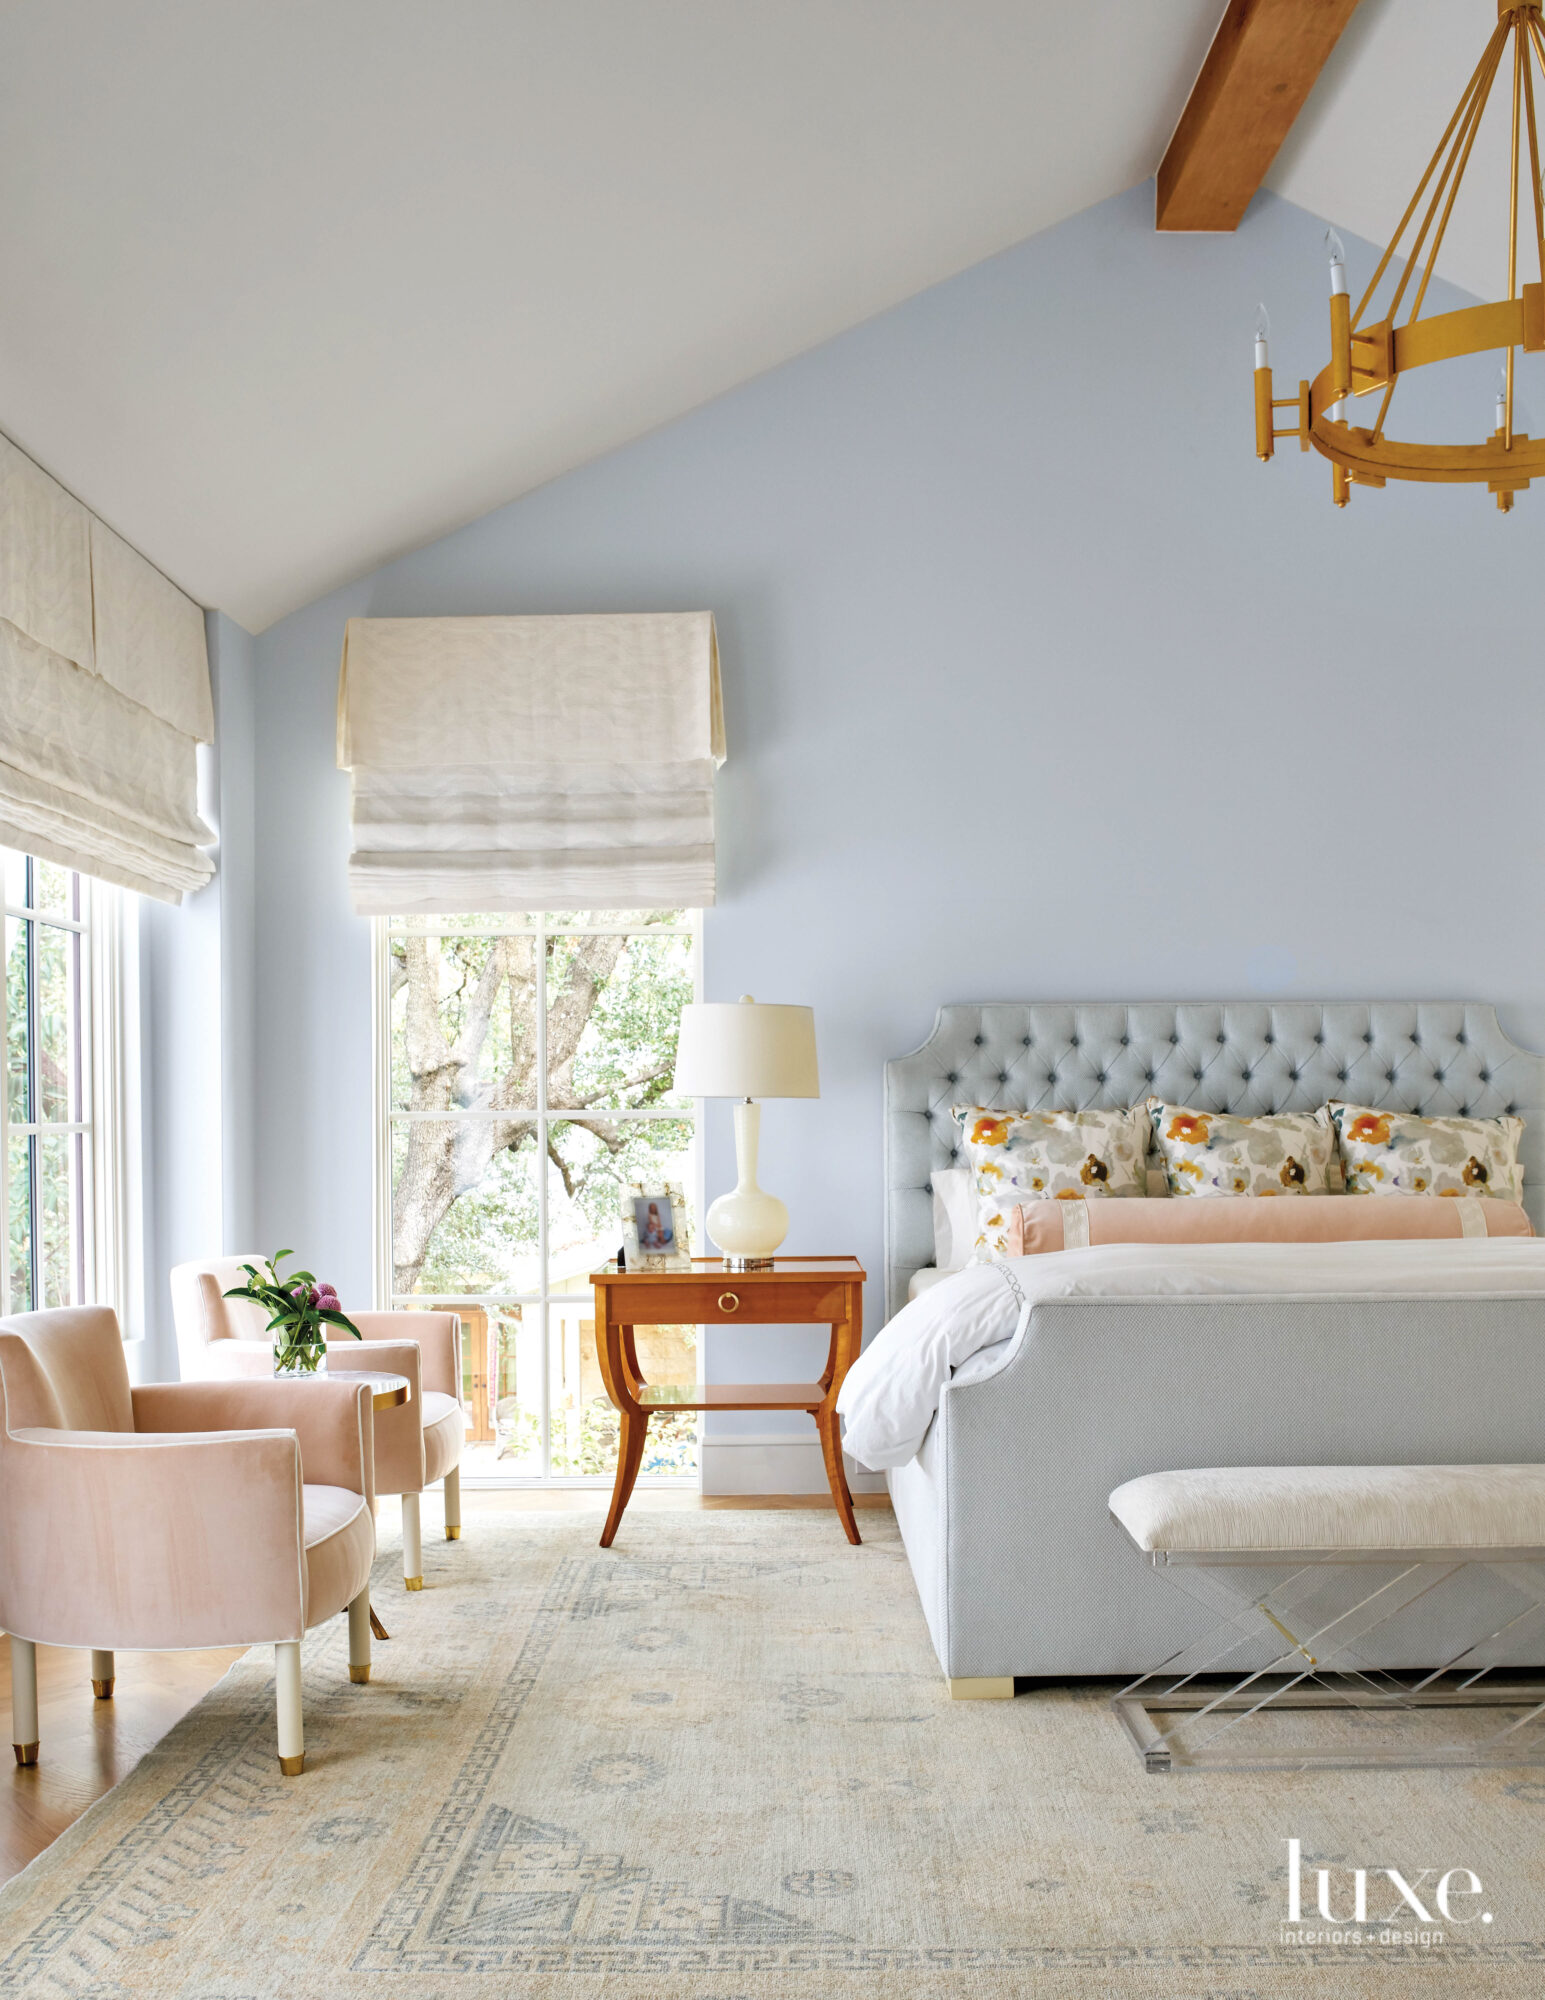 Soft blue bedroom with serene design.